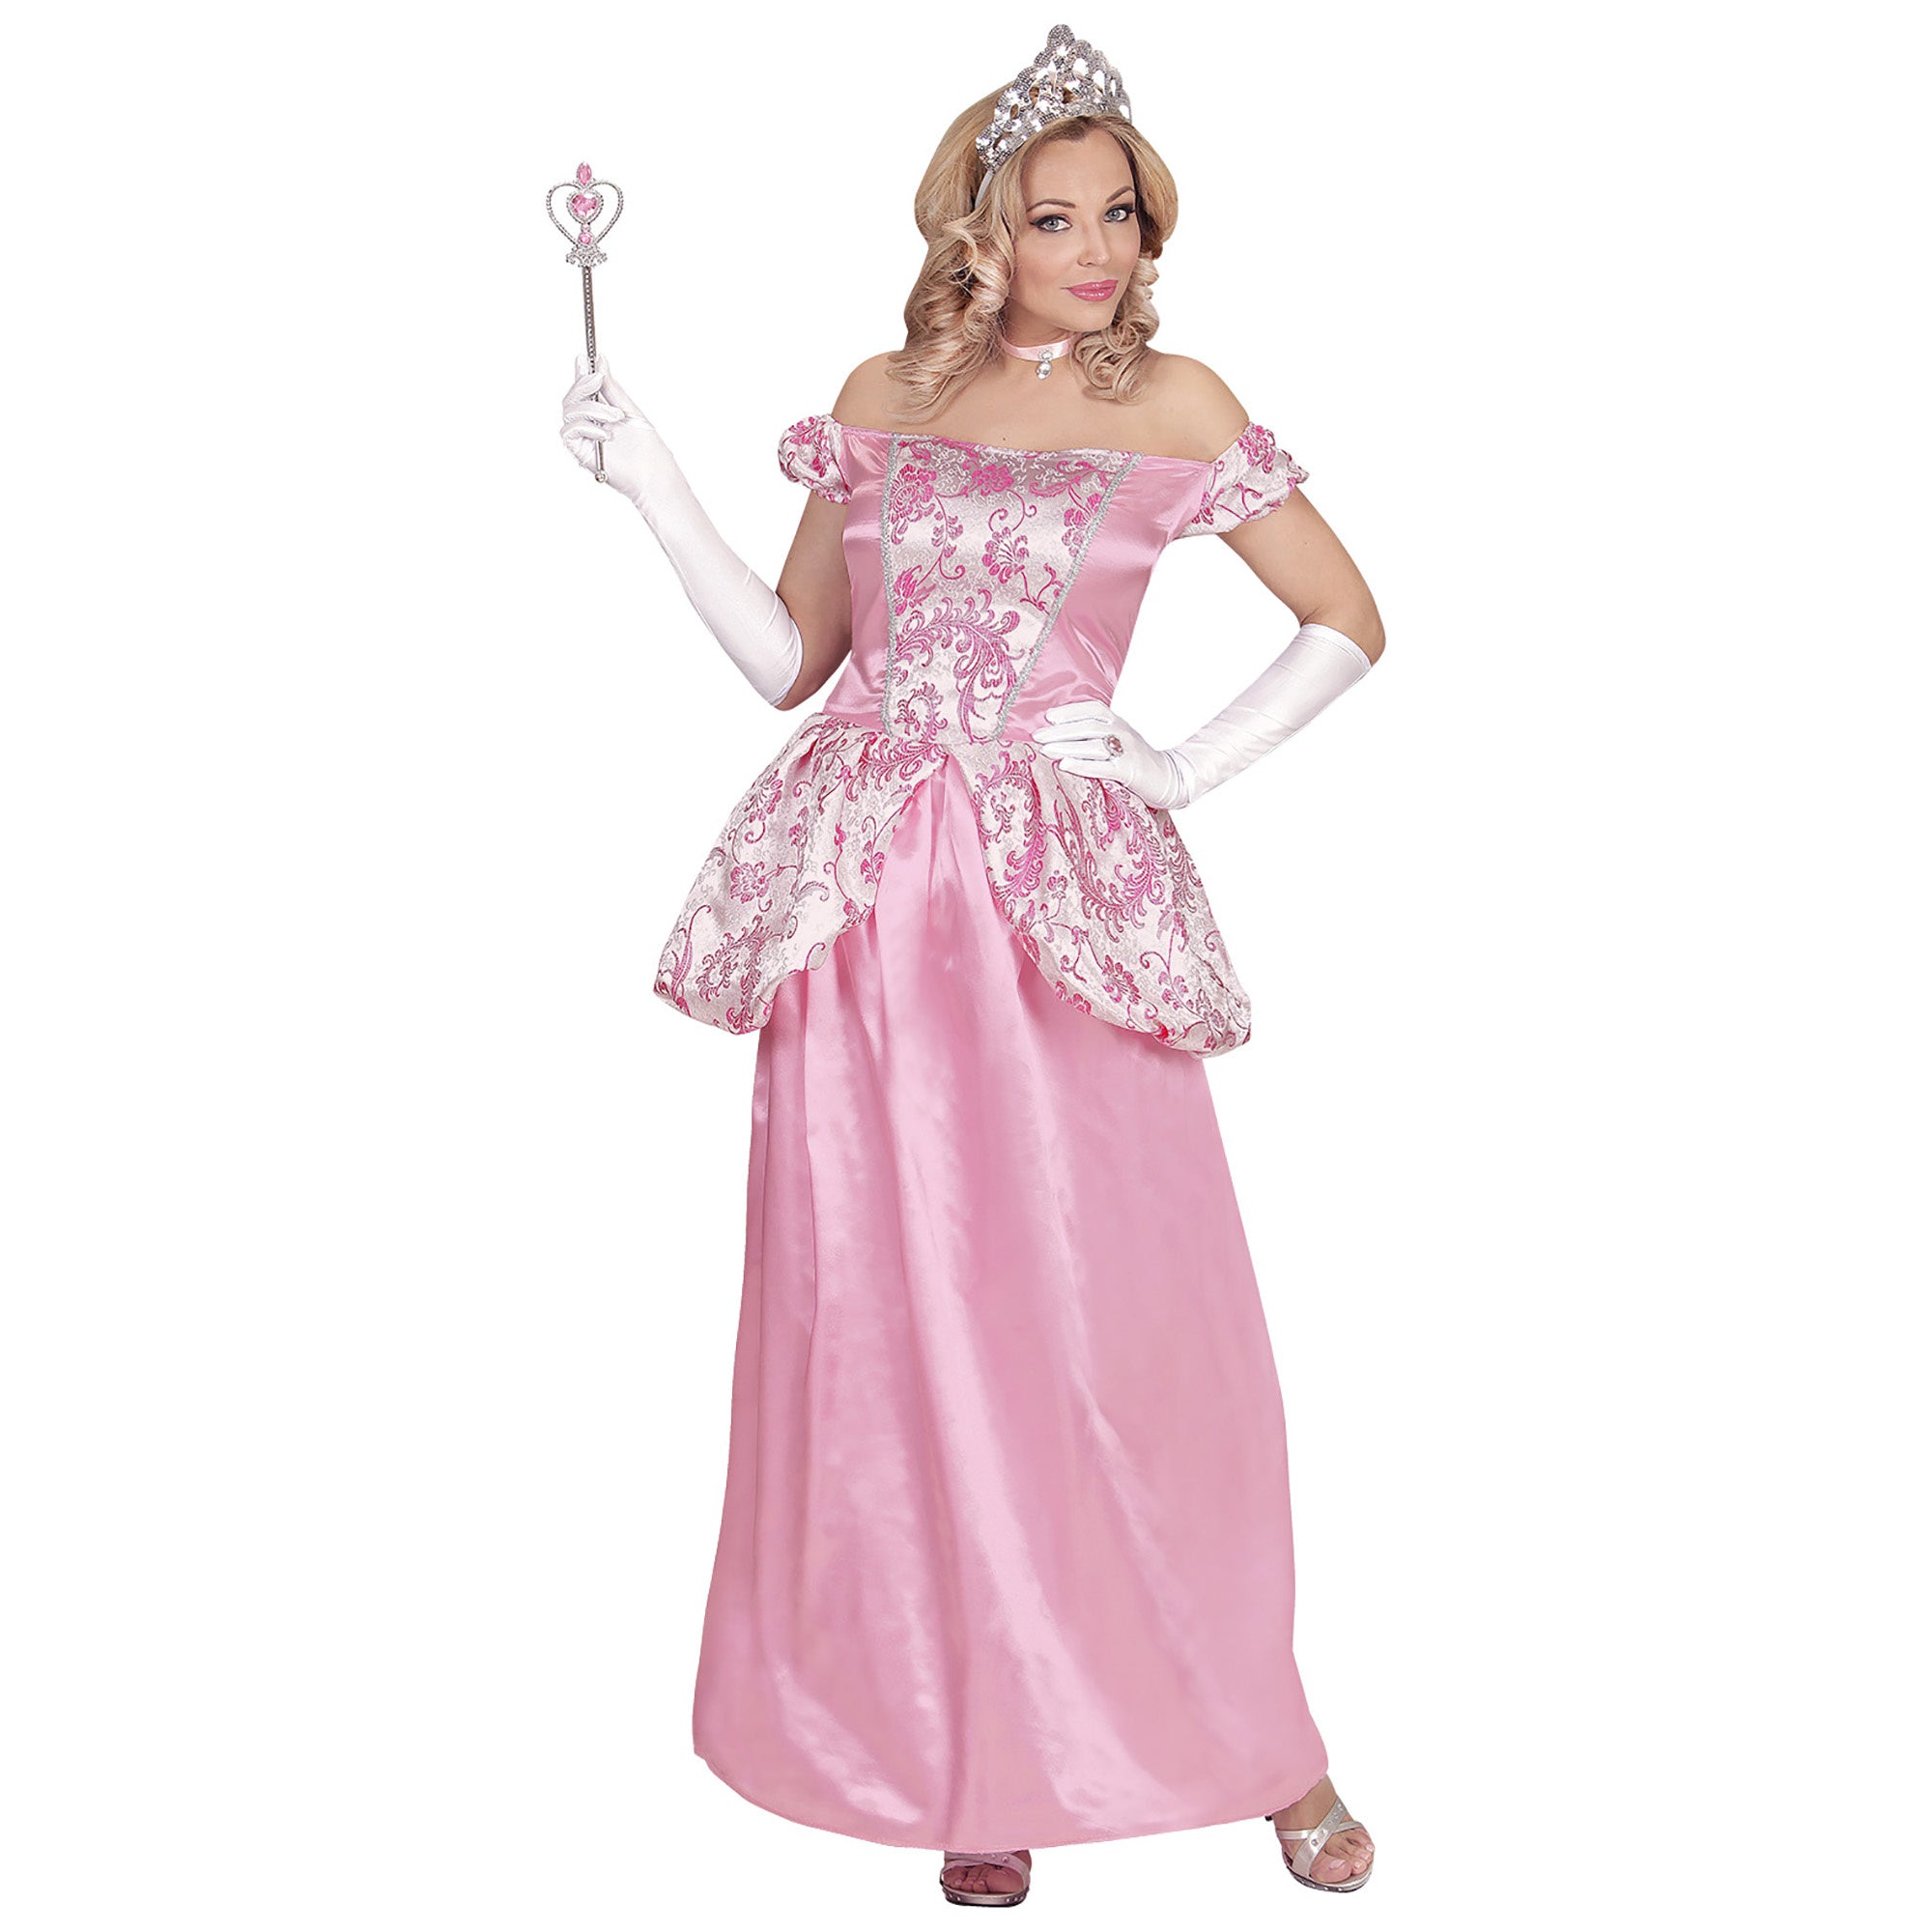 Widmann - Koning Prins & Adel Kostuum - Charmante Prinses Charissa - Vrouw - roze - Medium - Carnavalskleding - Verkleedkleding